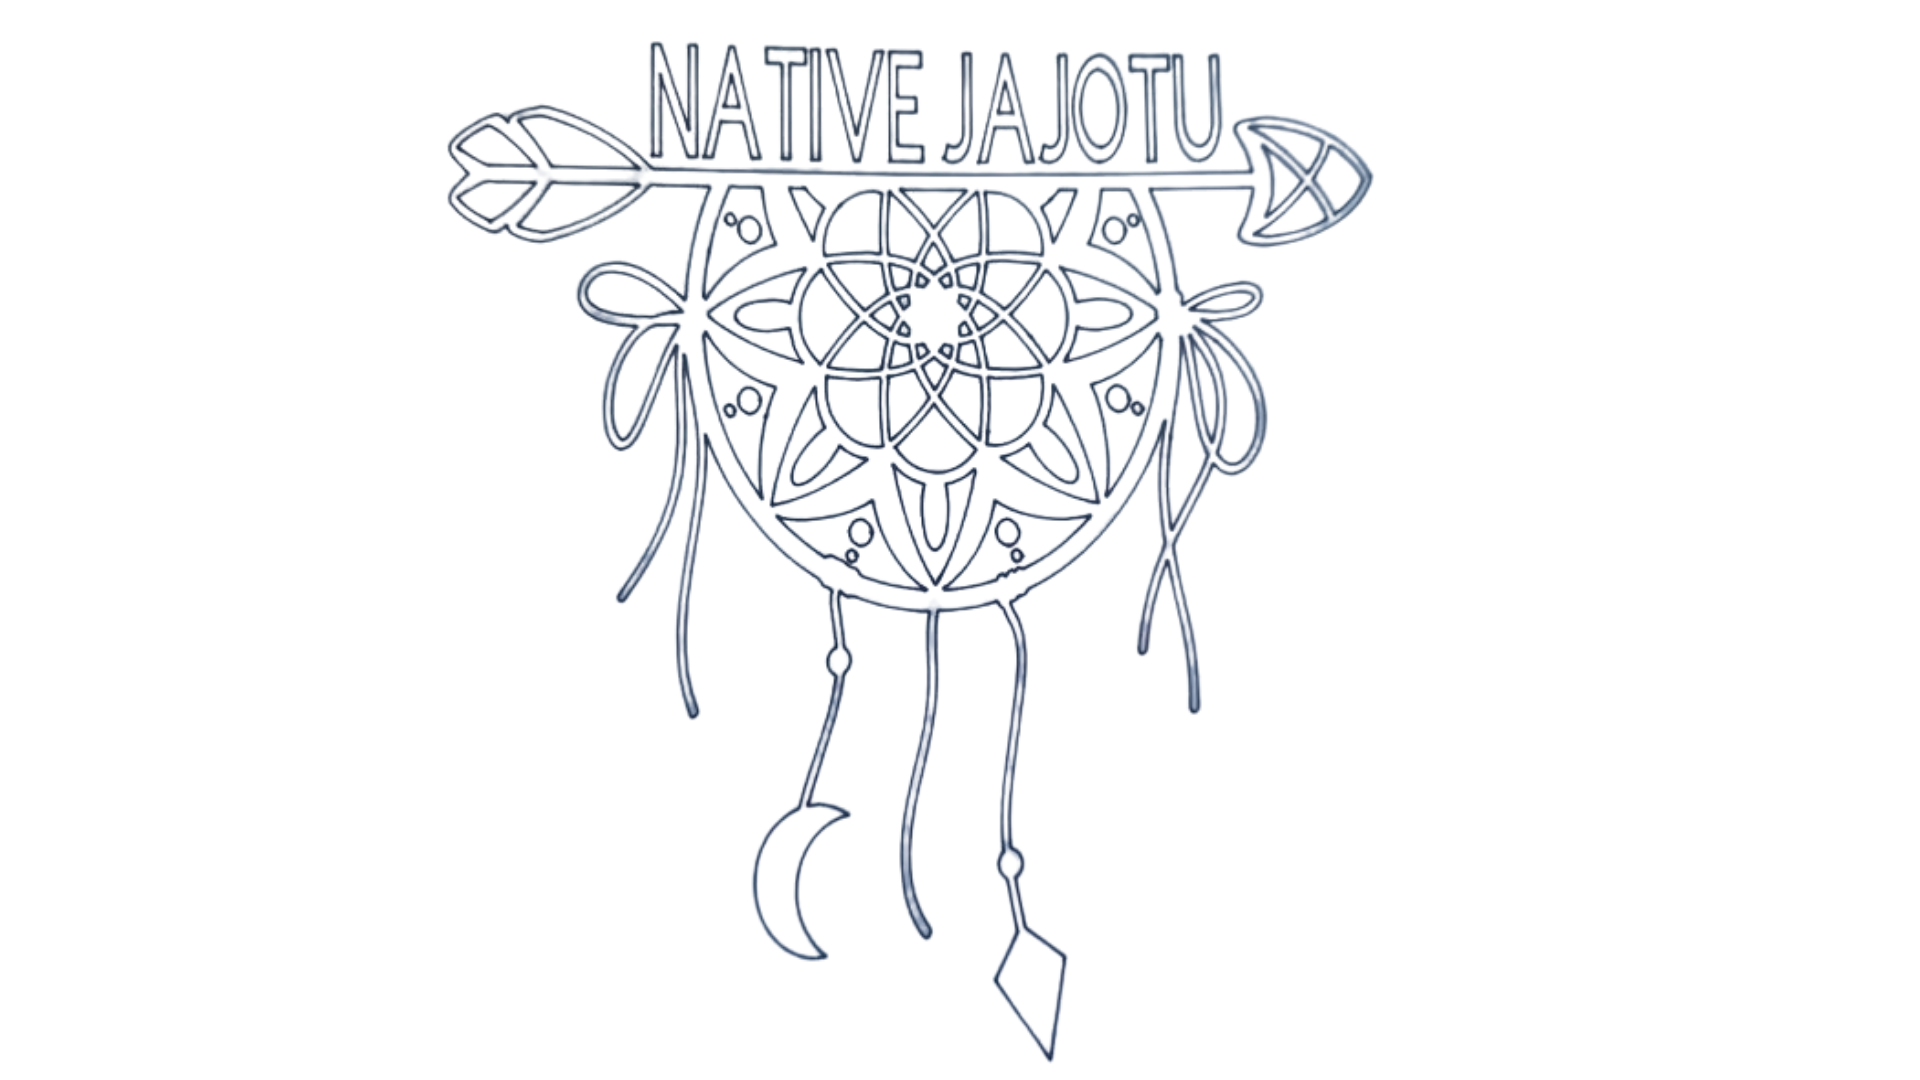 NativeJajotu